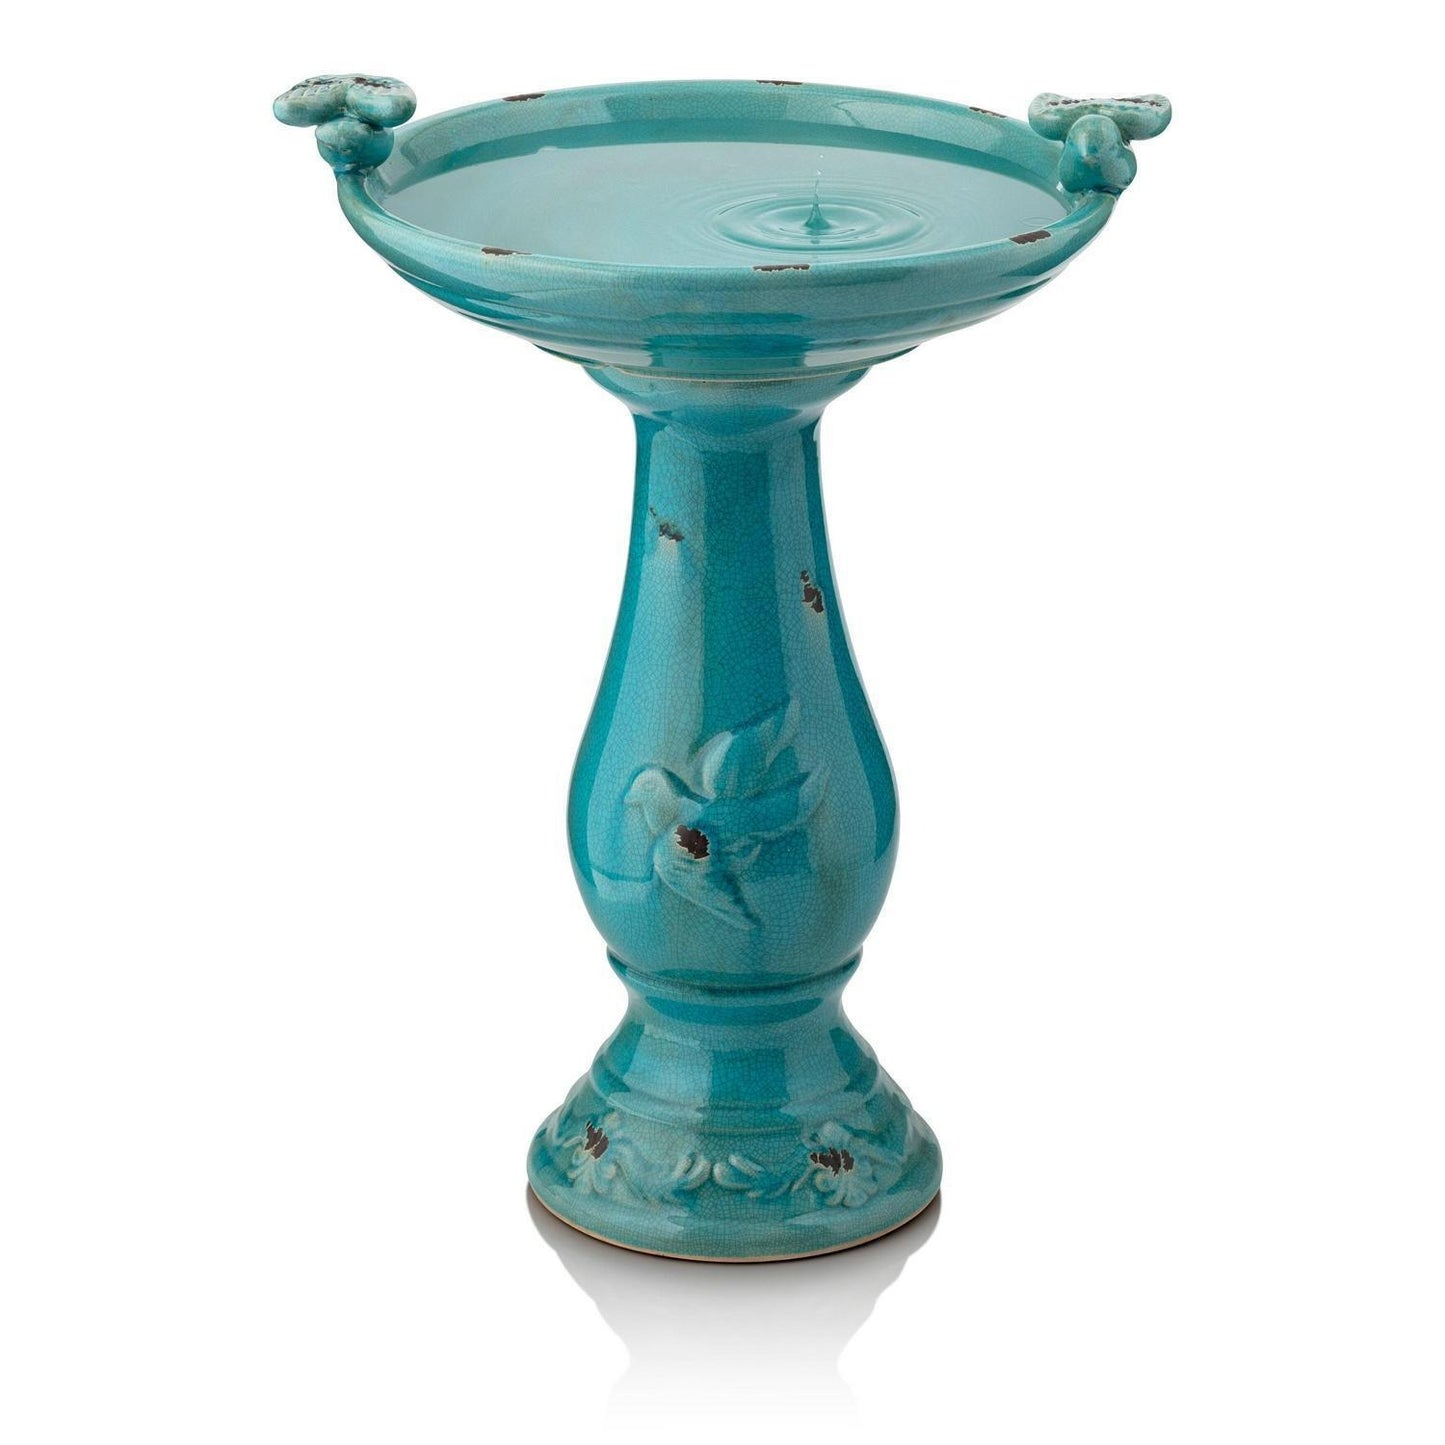 Vintage Turquoise Ceramic Pedestal Birdbath Vintage Yard Art Garden Decor 25in